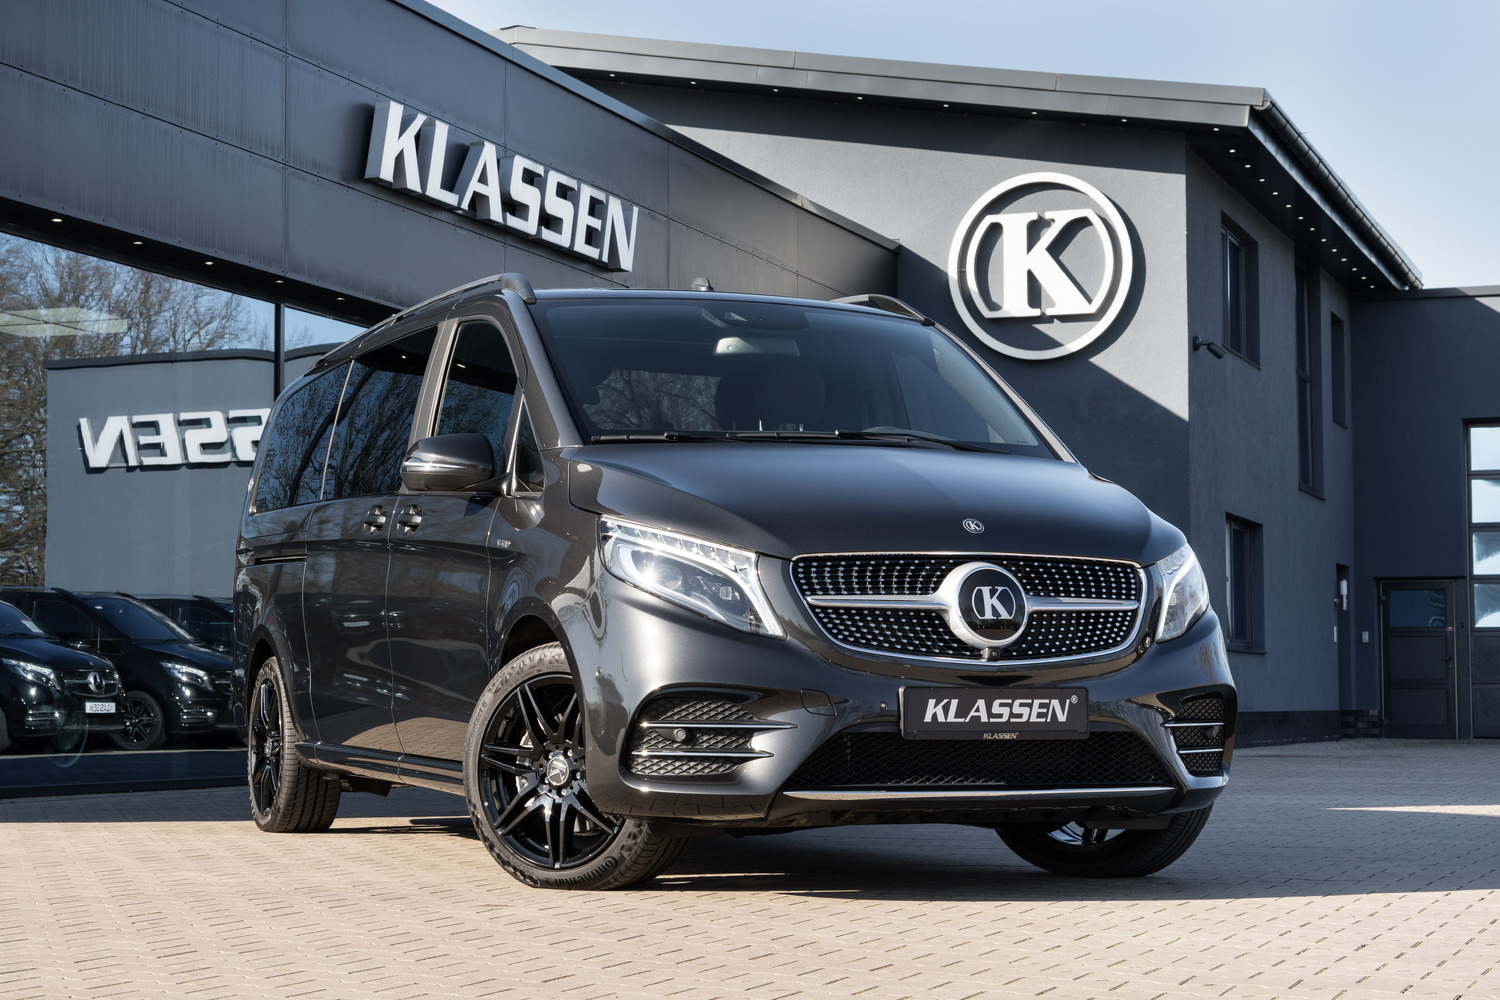 Вы можете купить Мерседес-Бенц V-Класс 2022 года в Москве по специальной цене от официального дилера Mercedes-Benz компании KLASSEN.